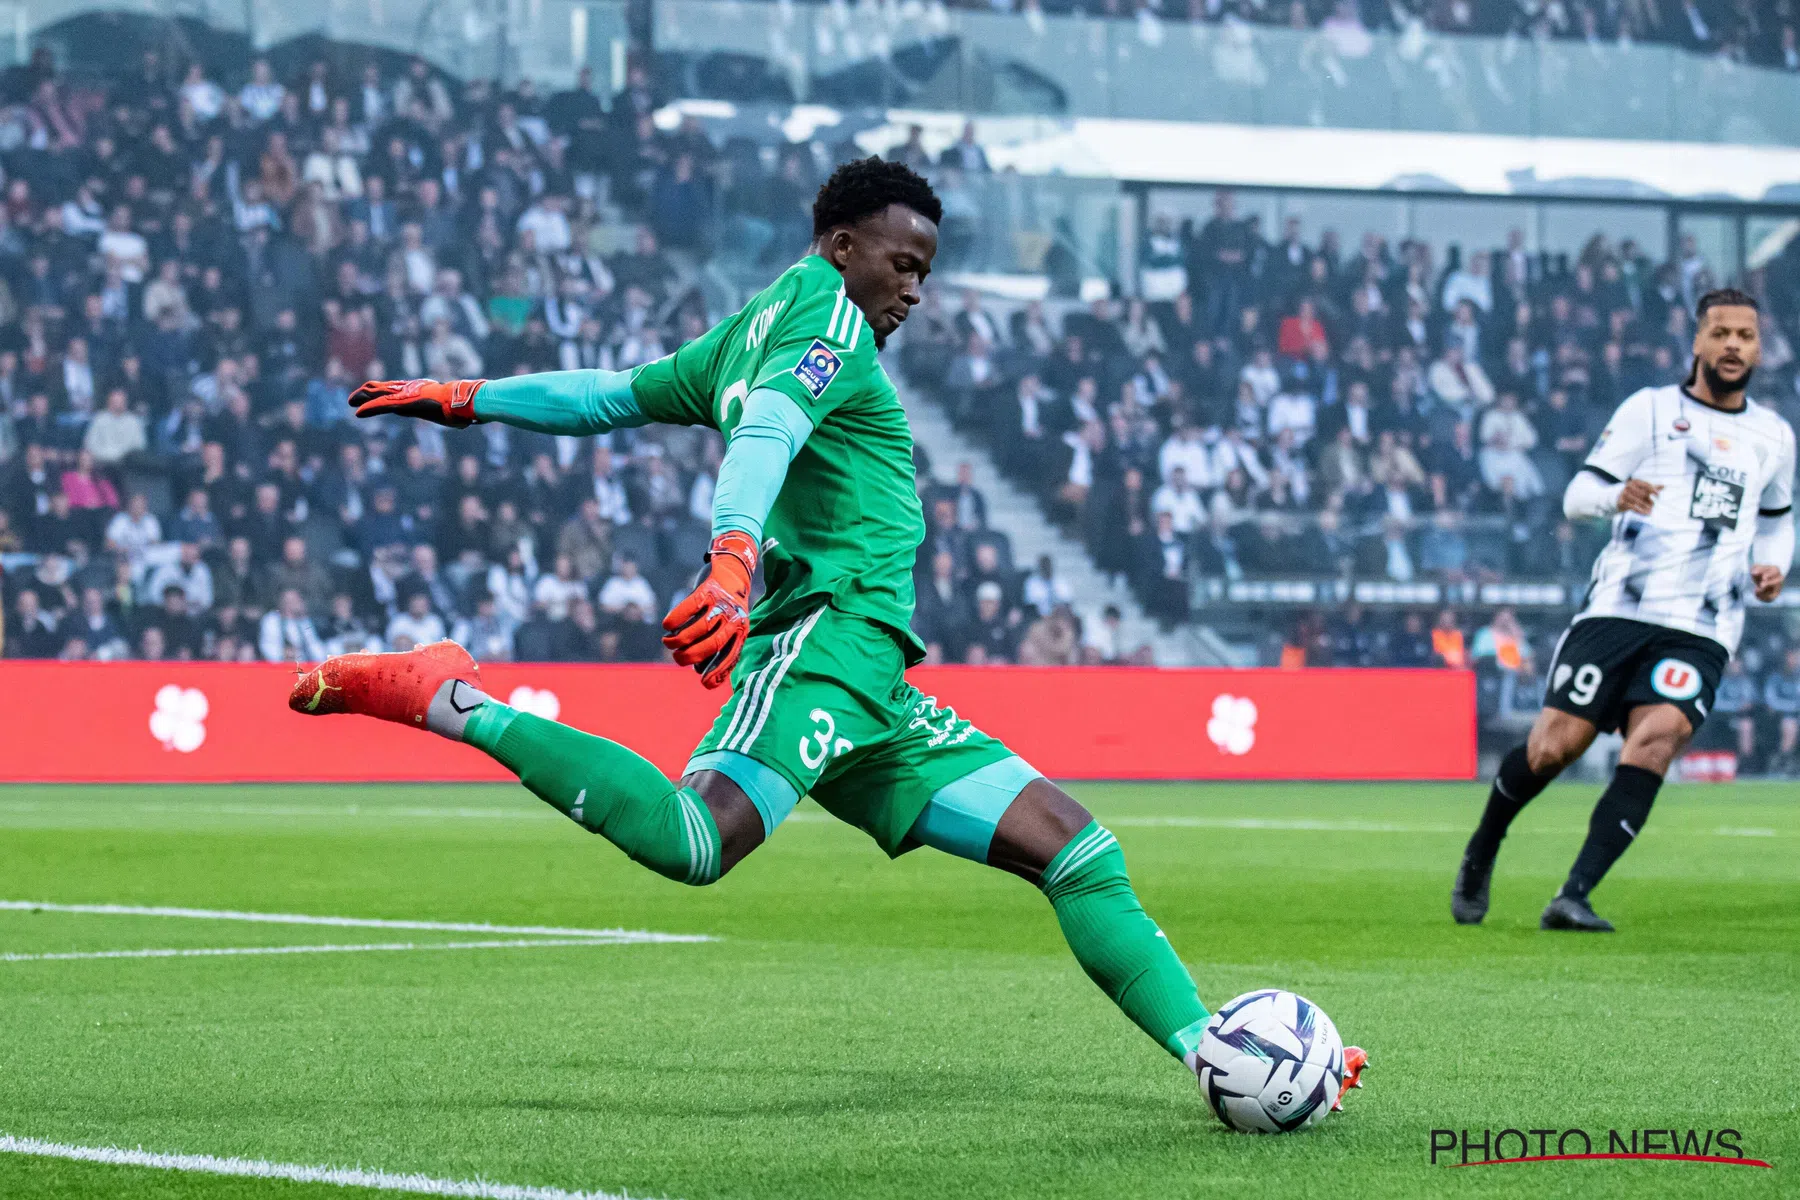 Na Defourny legt Sporting Charleroi doelman Koné vast Ligue 1 